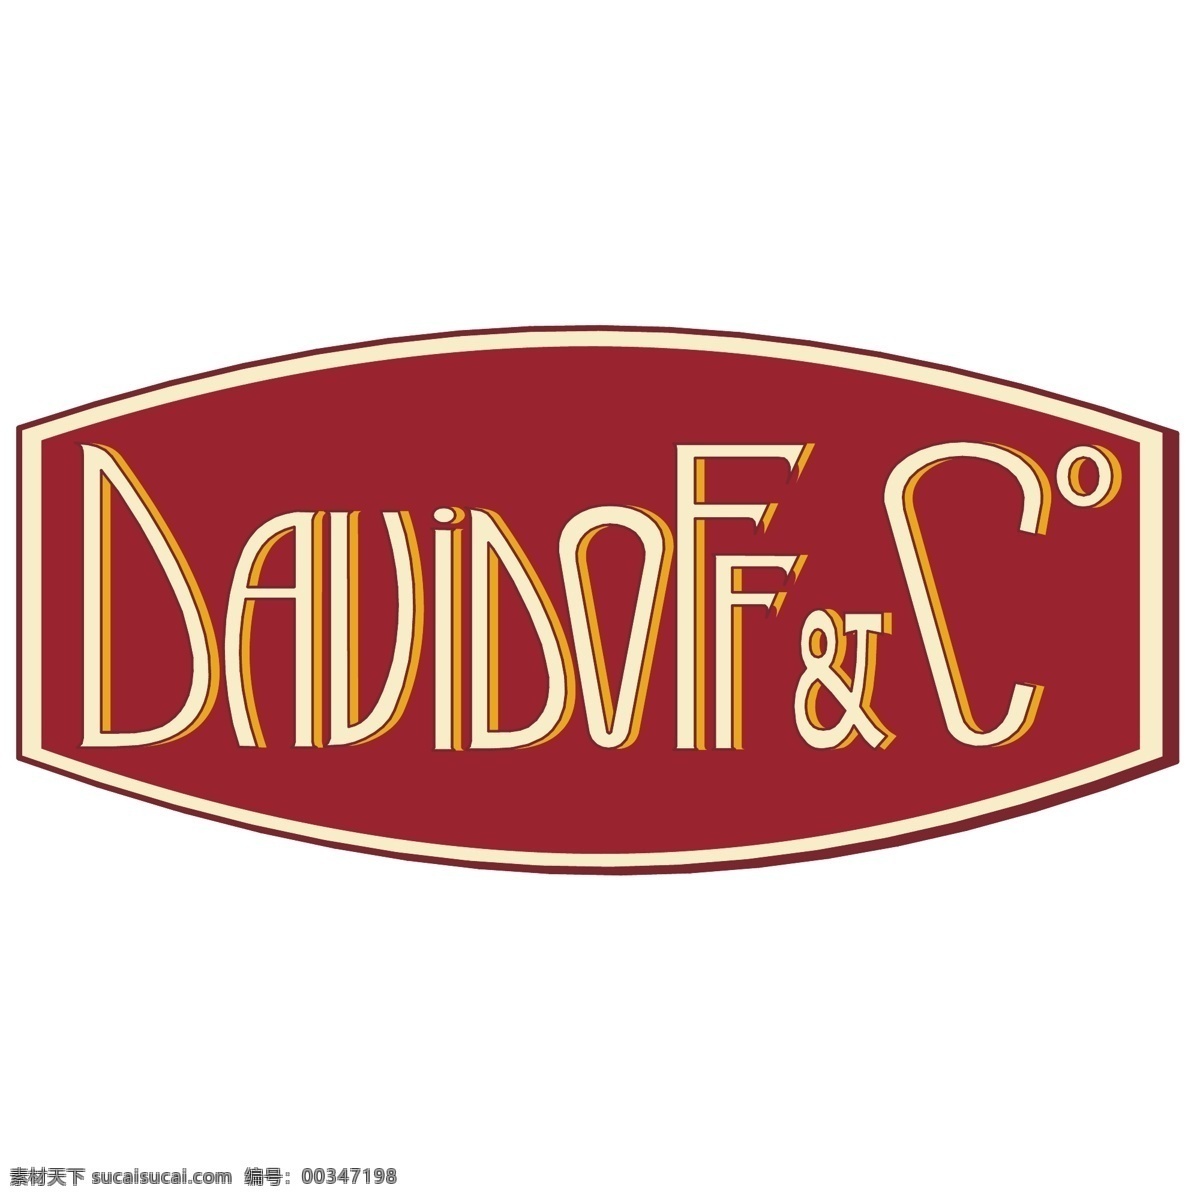 大卫 杜夫 免费 psd源文件 logo设计